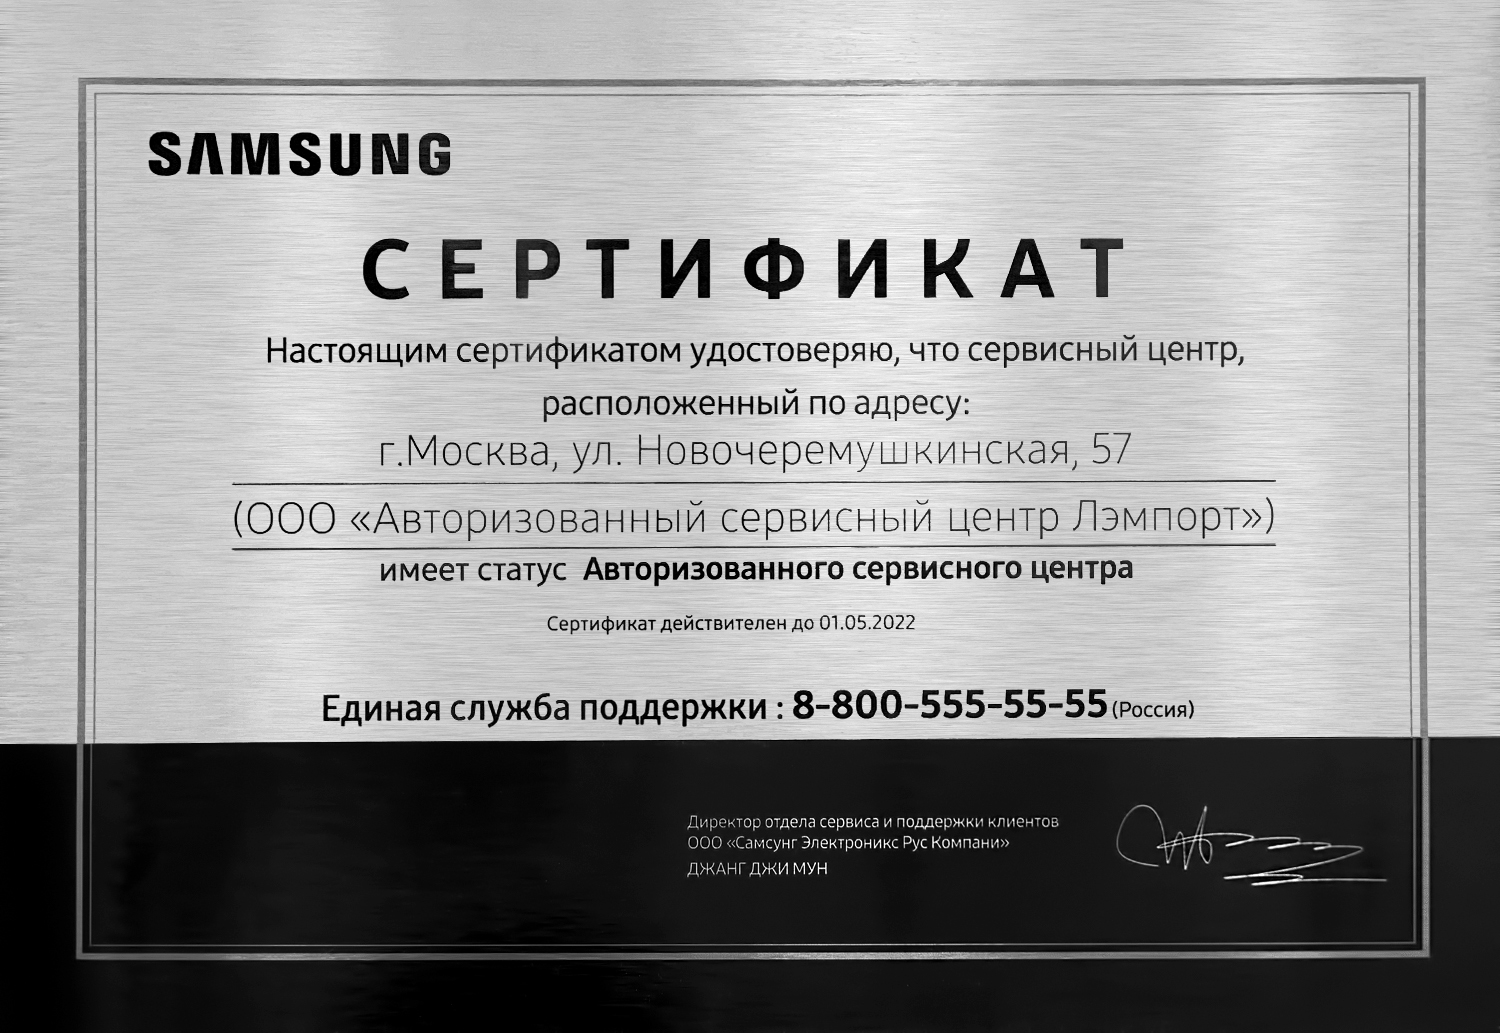 Самсунг гарантийный сервисный центр. Авторизованный сервисный центр Samsung. Сертификаты для сервисного центра самсунг. Авторизованный сервис Samsung. Сервис самсунг Москва.